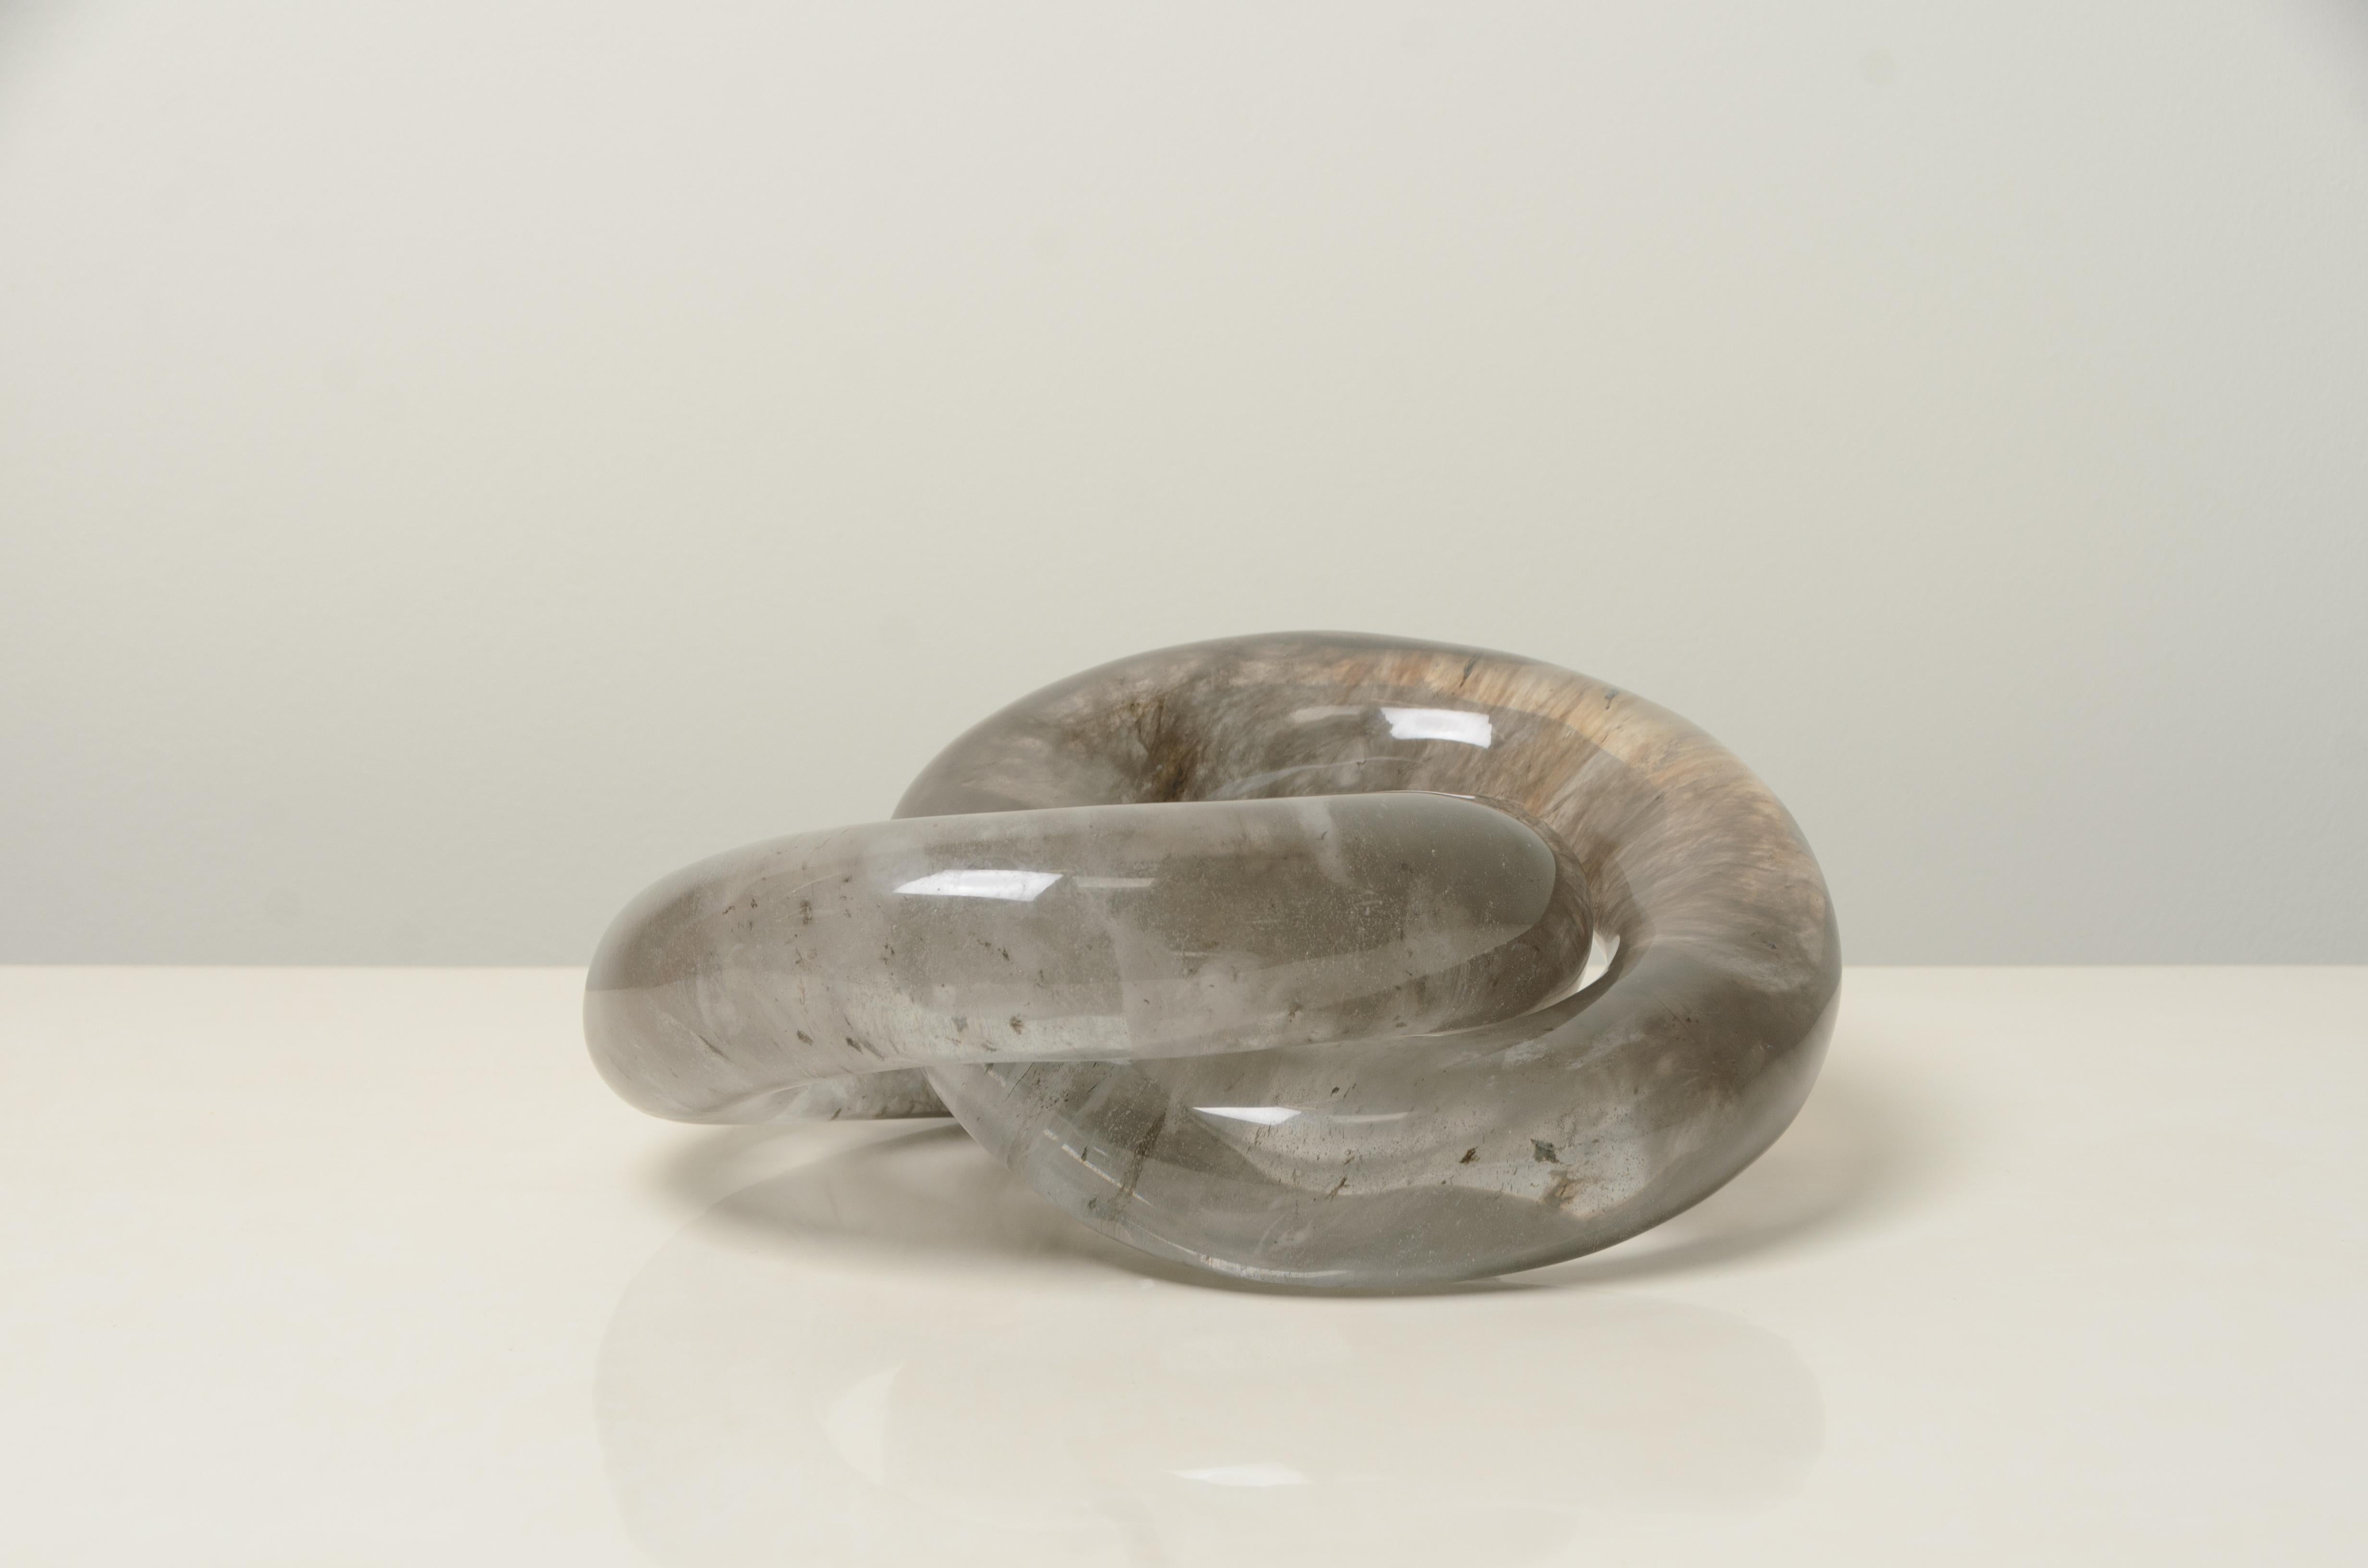 Sculpture à double anneau
Cristal fumé
Sculpté à la main
Édition limitée
Les inclusions de cristaux varient

Sculptée selon les techniques de sculpture du jade.  Chaque pièce est fabriquée individuellement et est unique. 